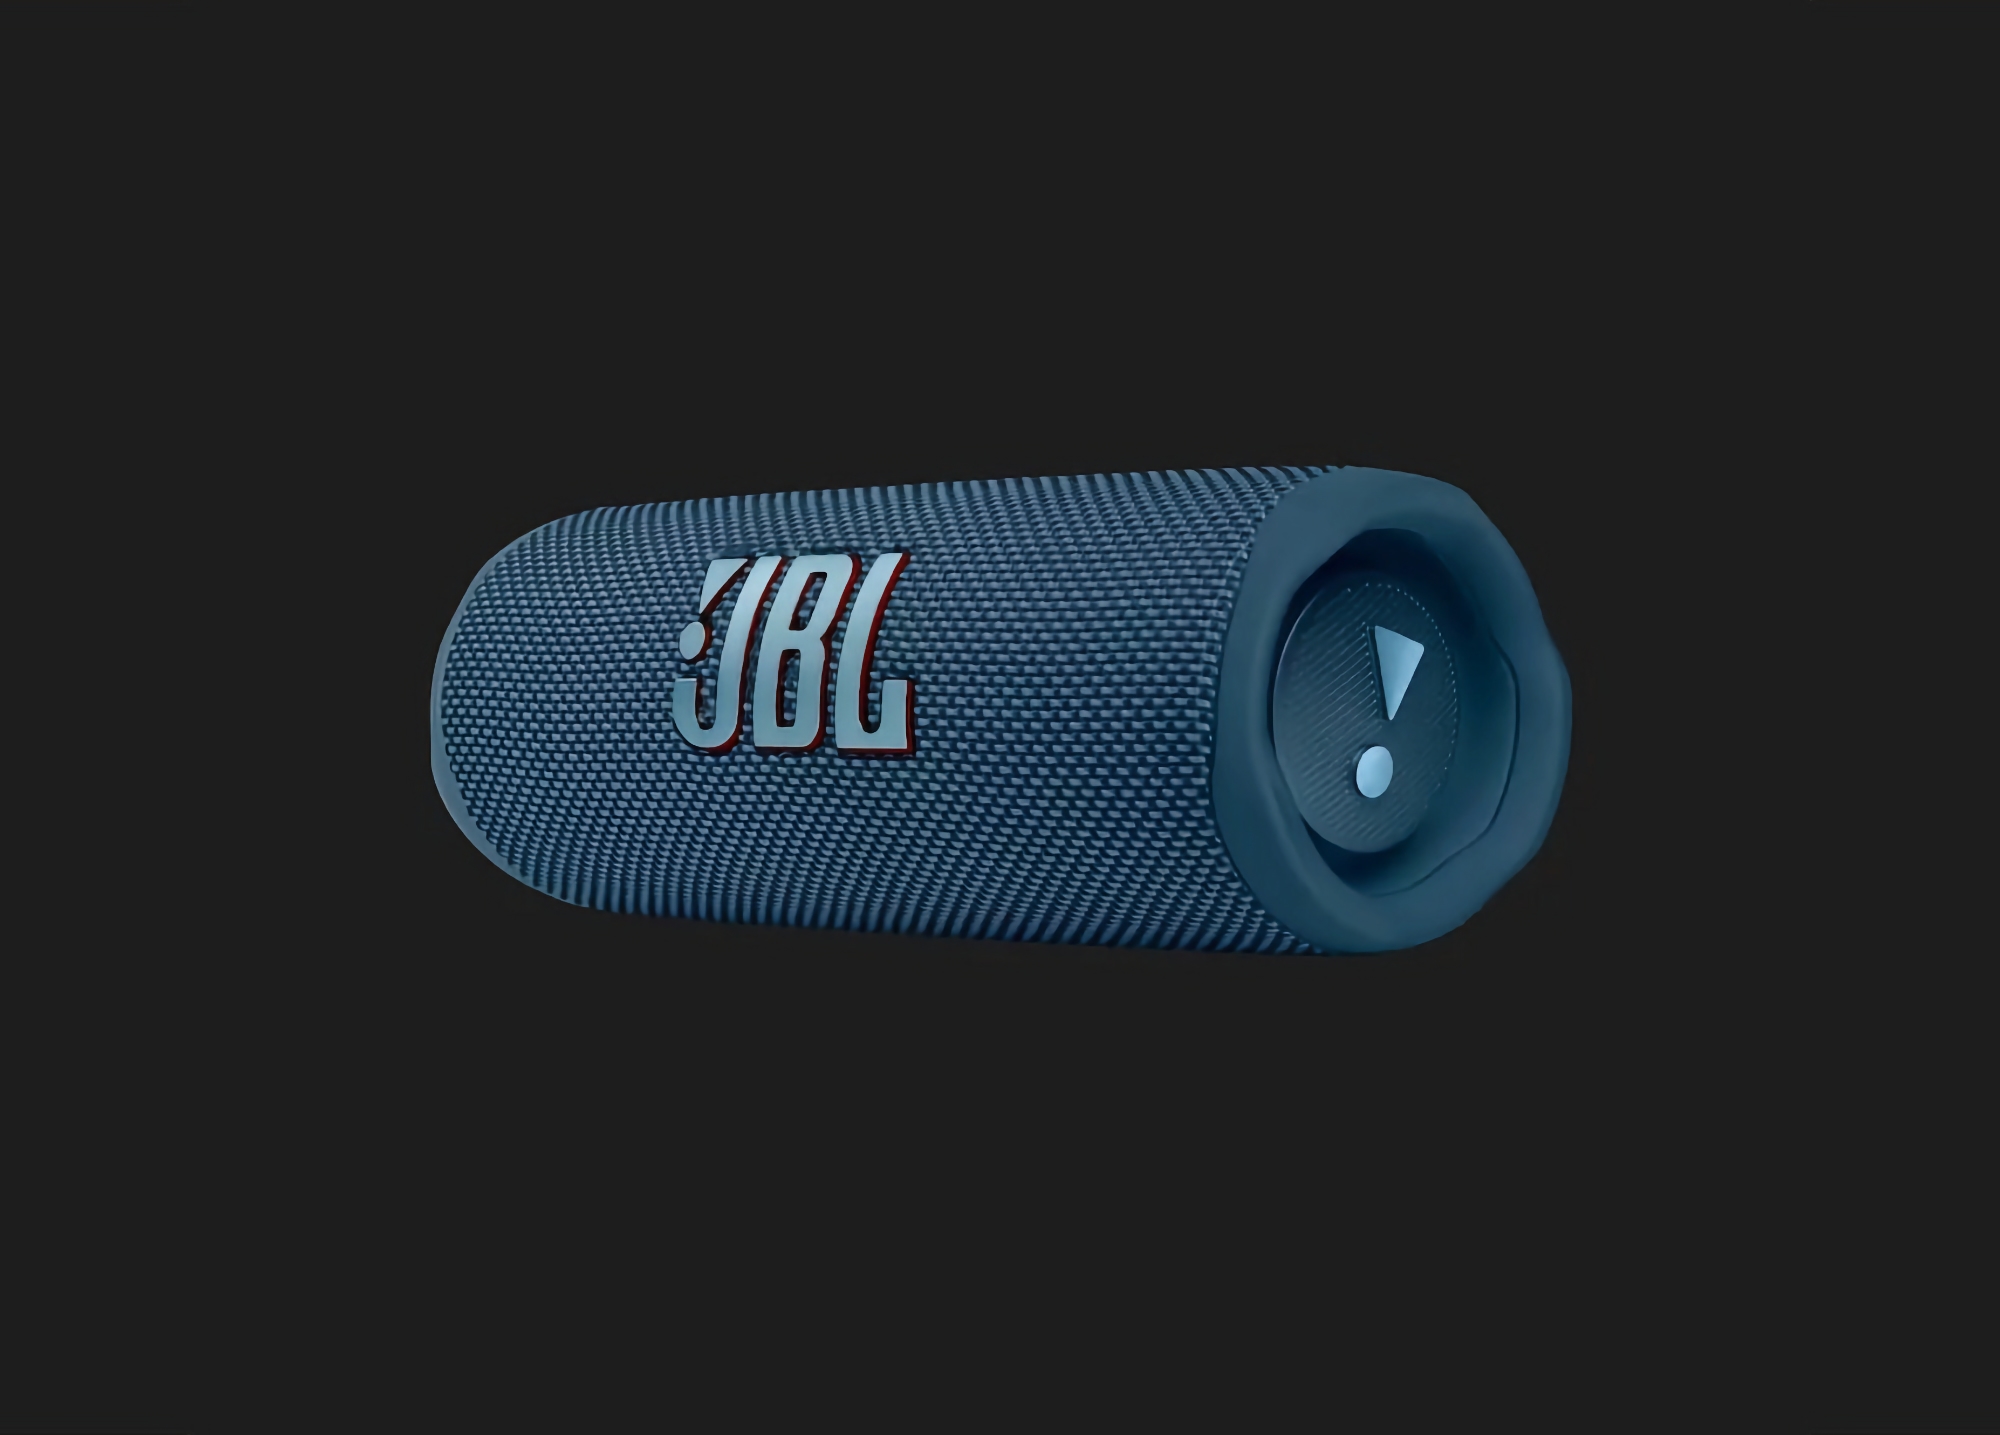 De JBL Flip 6 met IP67-bescherming en een batterijlevensduur tot 12 uur is verkrijgbaar op Amazon voor $97,90 (korting van $32).